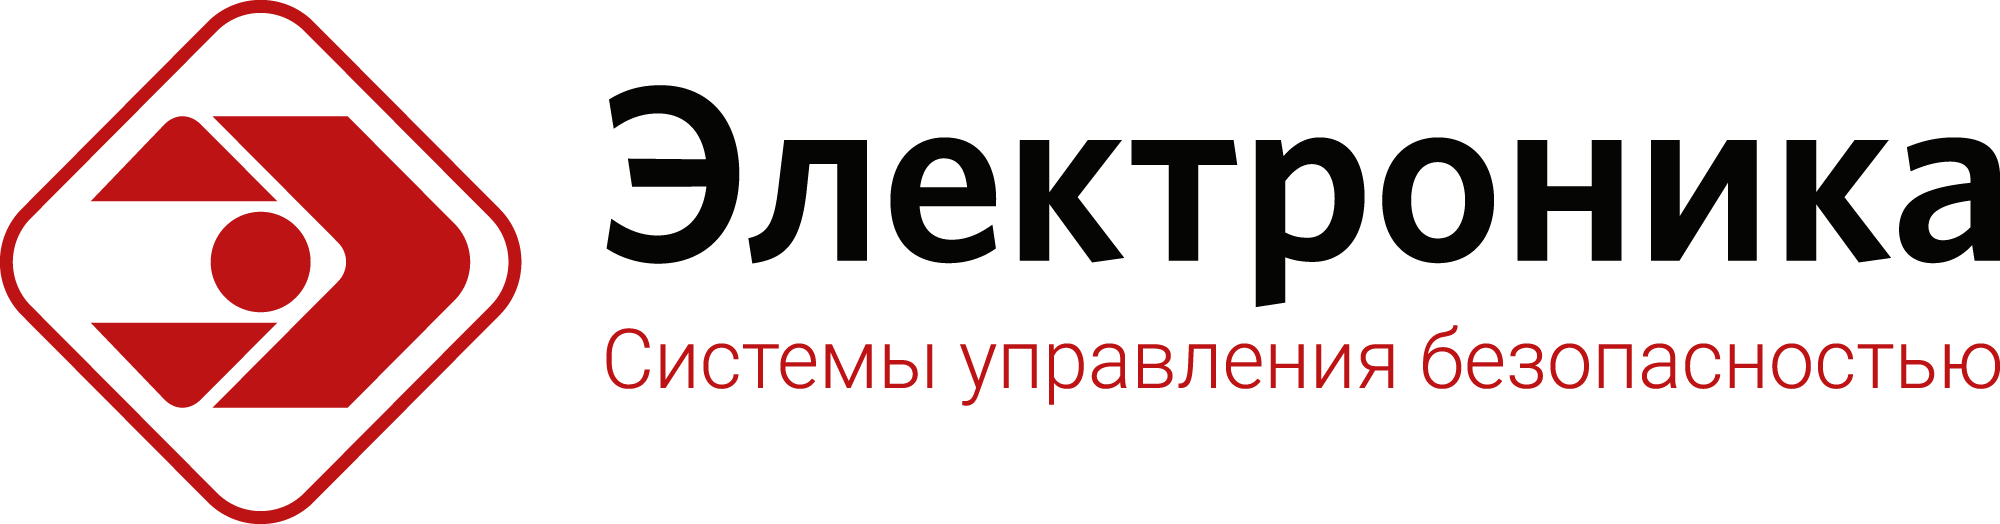 Electronika_logo_2019